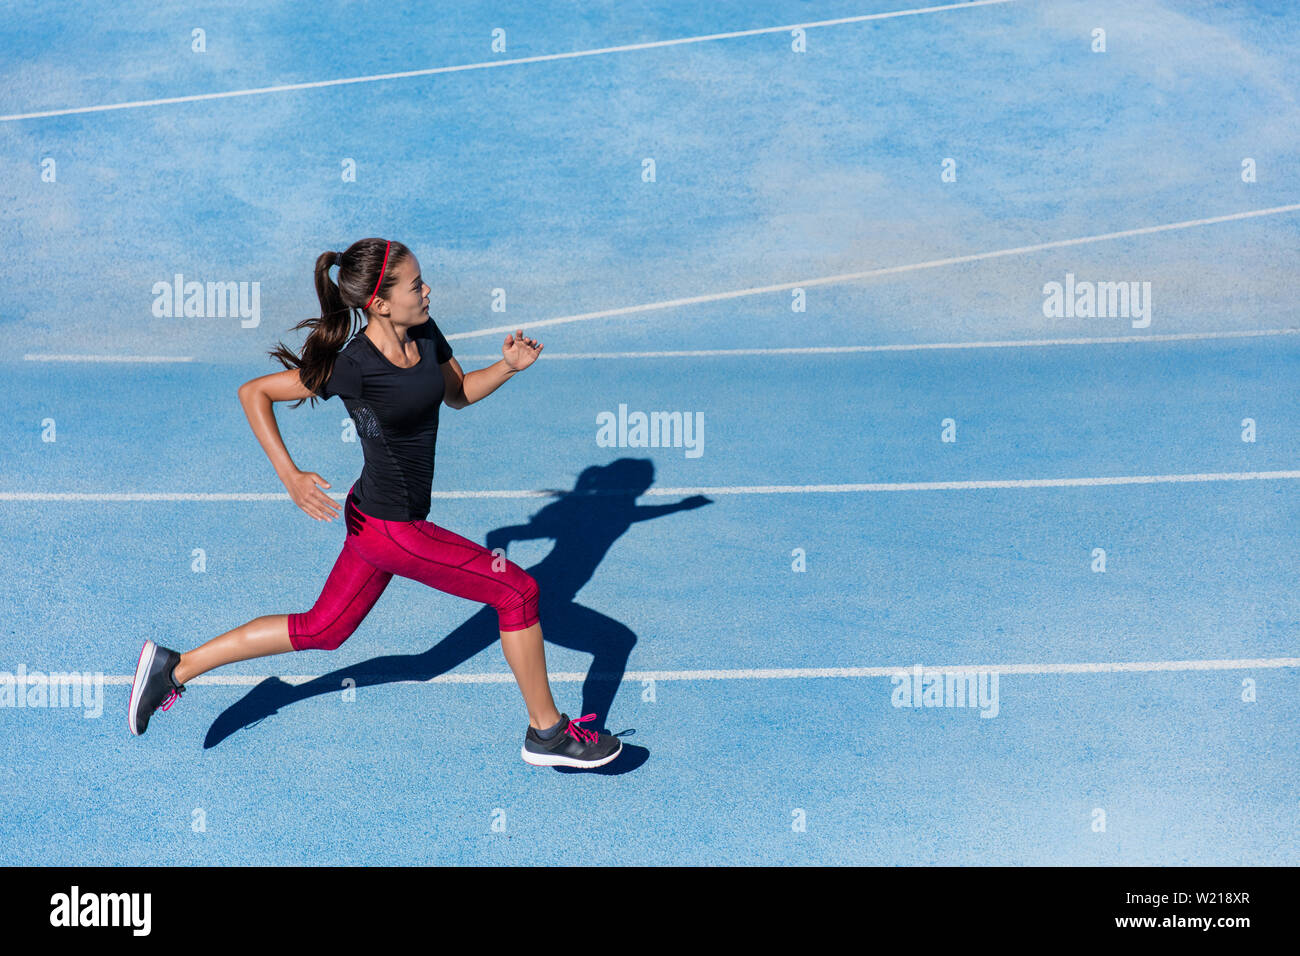 Sportler Läufer laufen auf der Leichtathletikbahn training Ihr cardio. Jogger Frau joggen am schnellen Tempo für Wettbewerb Rennen auf Blau Spur am Außenpool im Sommer Stadion das Tragen der roten Capri Strumpfhosen und Schuhe. Stockfoto